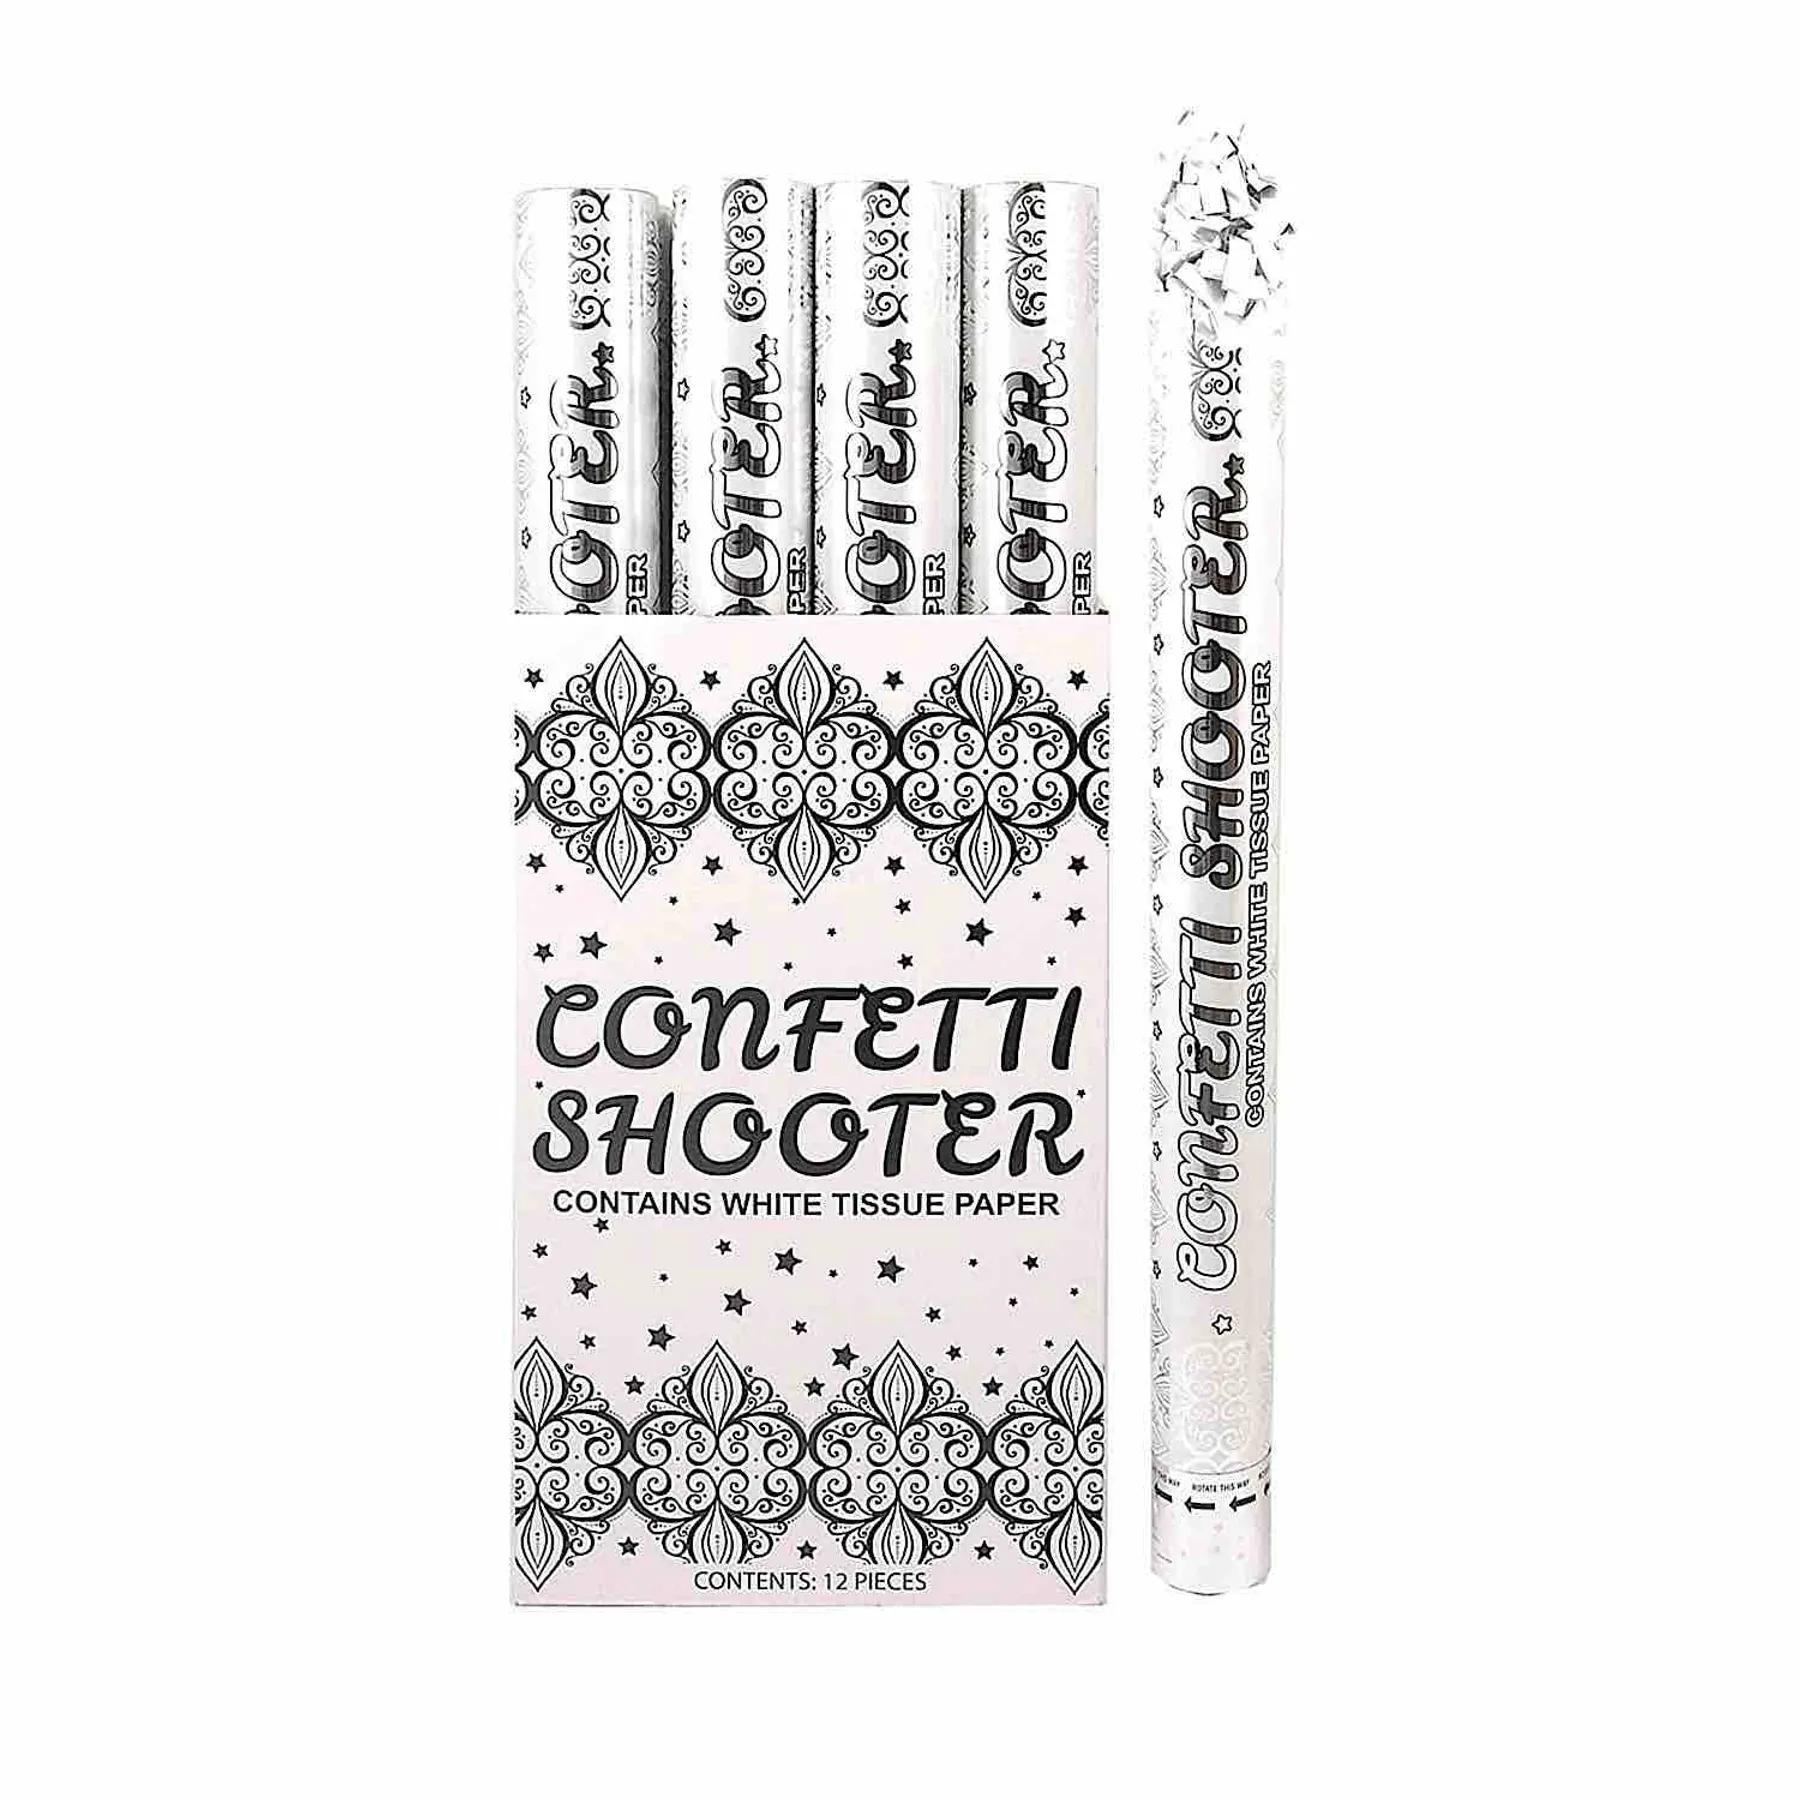 White Confetti Shooter